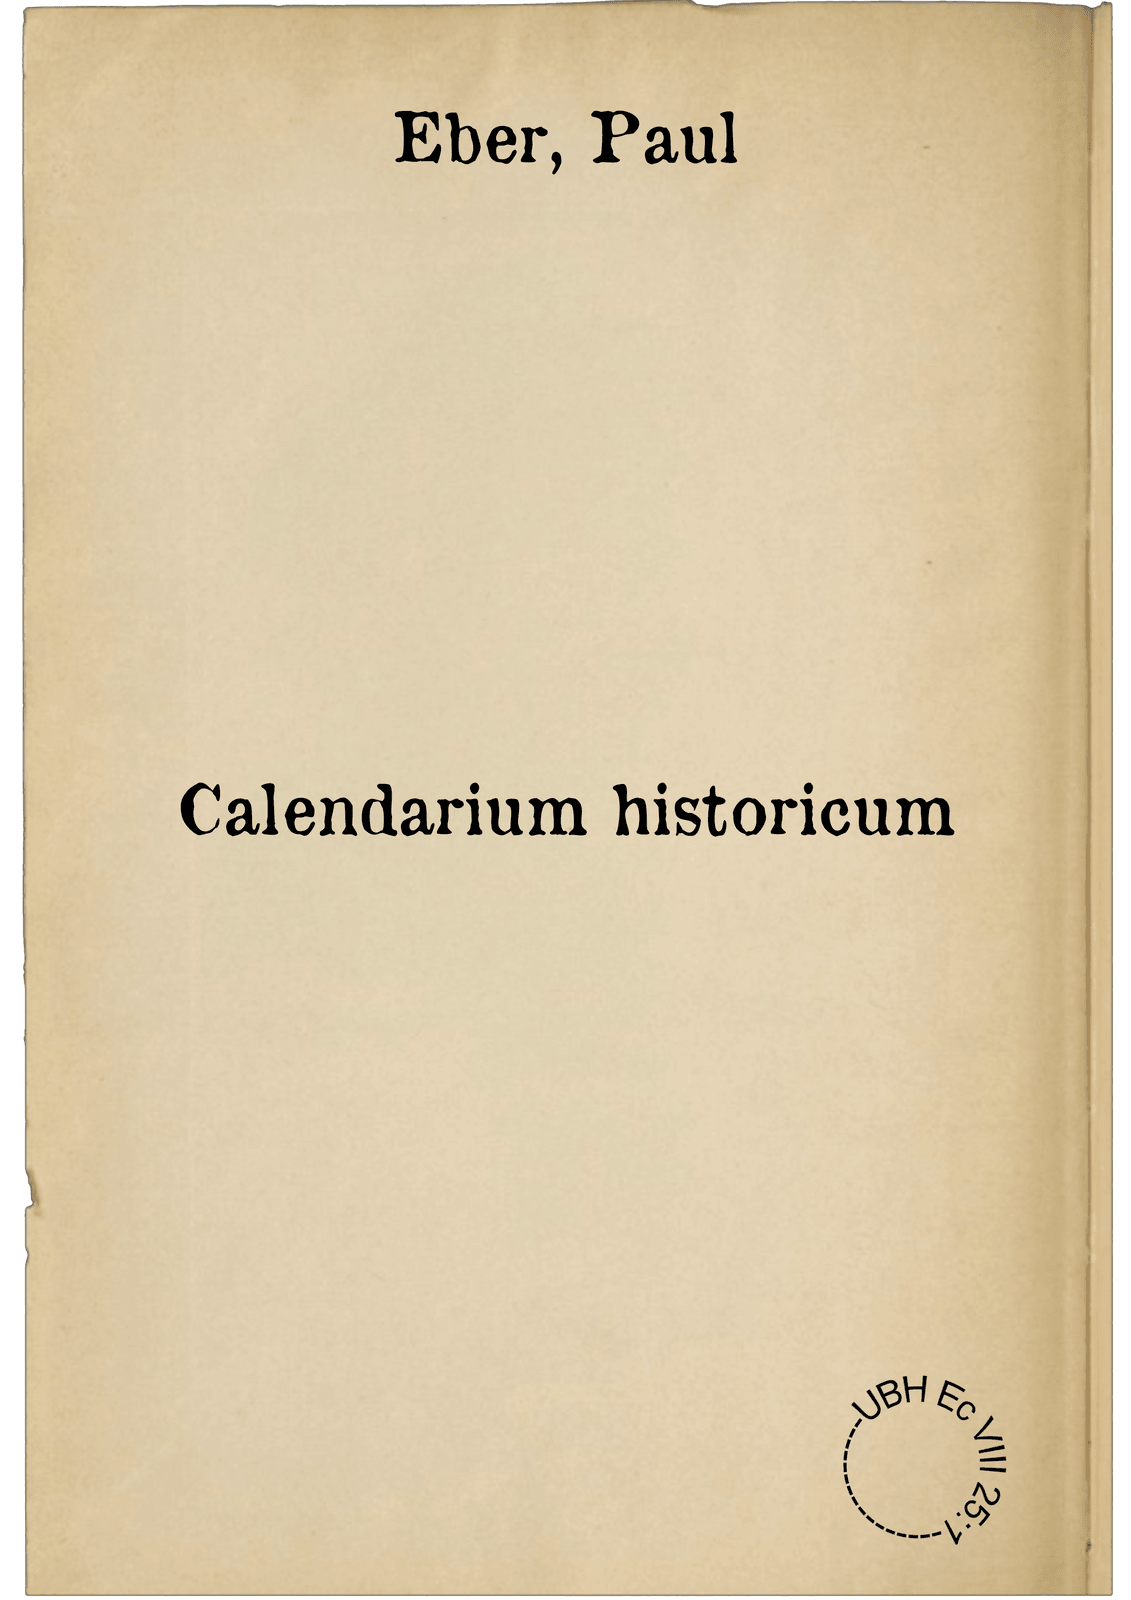 Calendarium historicum